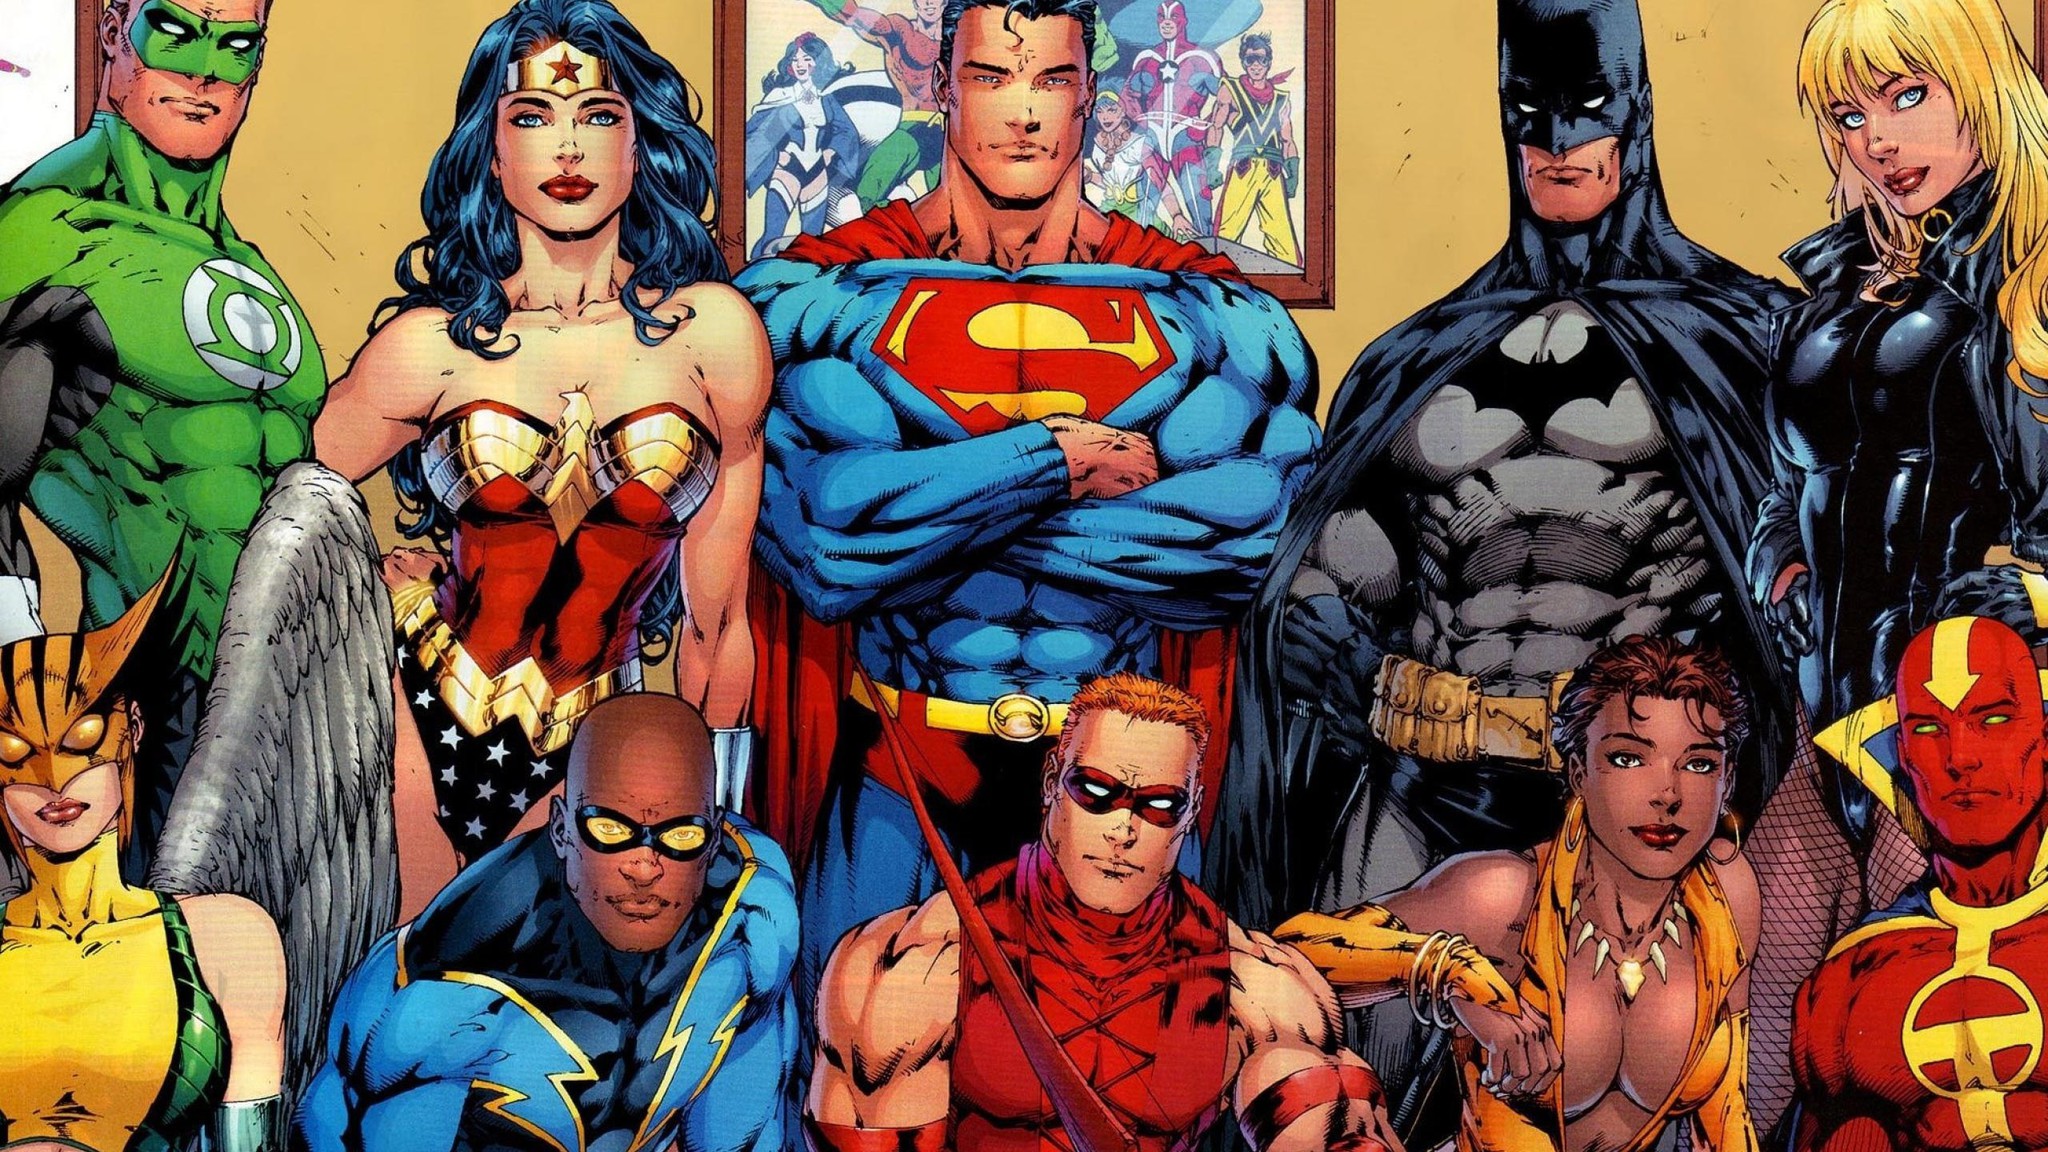 tous les héros fond d'écran,des bandes dessinées,super héros,héros,personnage fictif,fiction